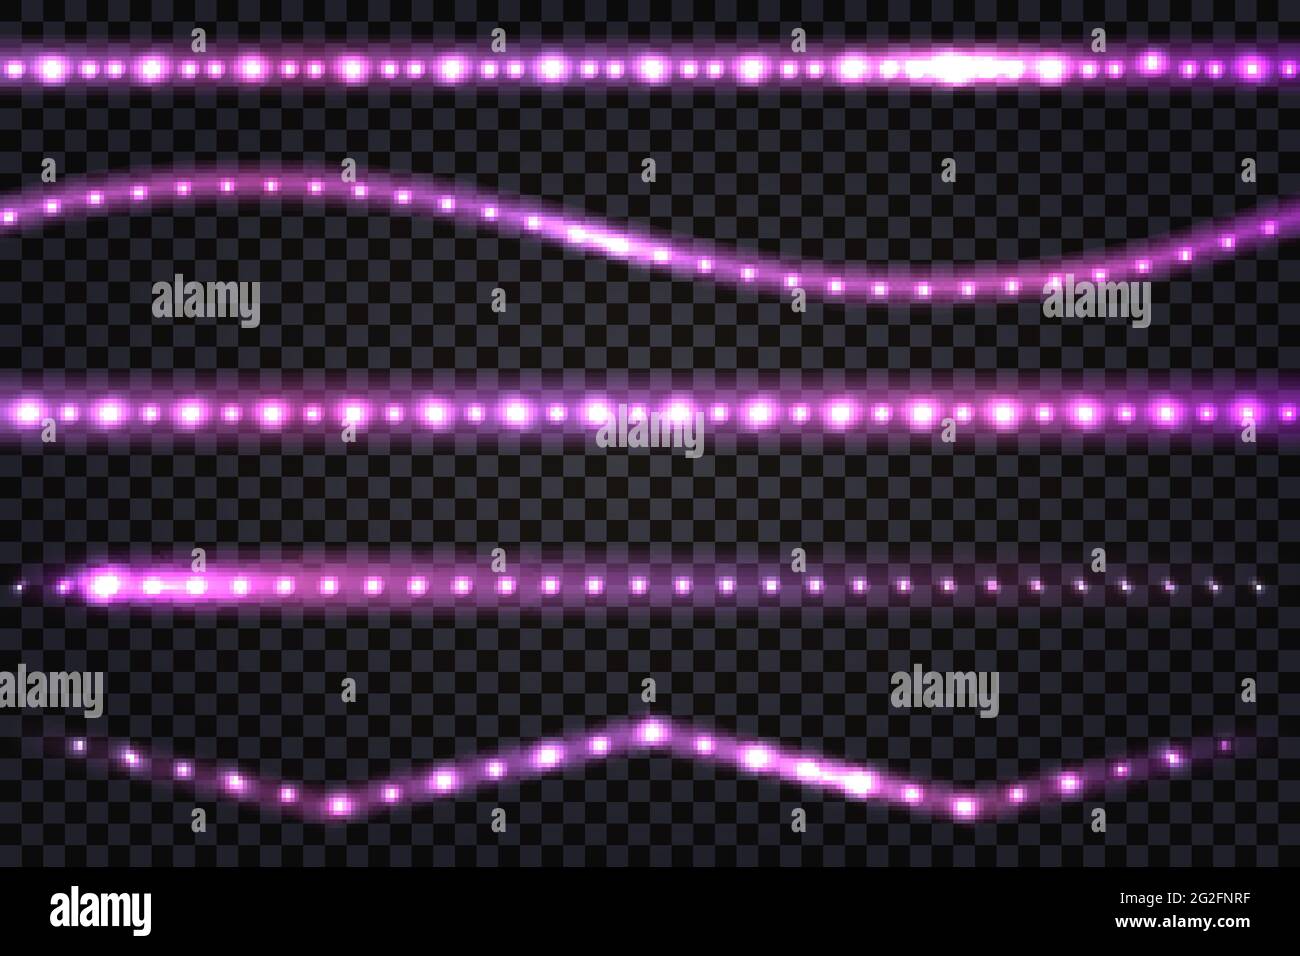 LED-Licht Girlanden mit violettem Neon-Glow-Effekt, mit Glitzerlicht-Set aus Linien, beleuchteten Streifen und Wellen, isolierten Bändern auf transparentem Backgr Stock Vektor